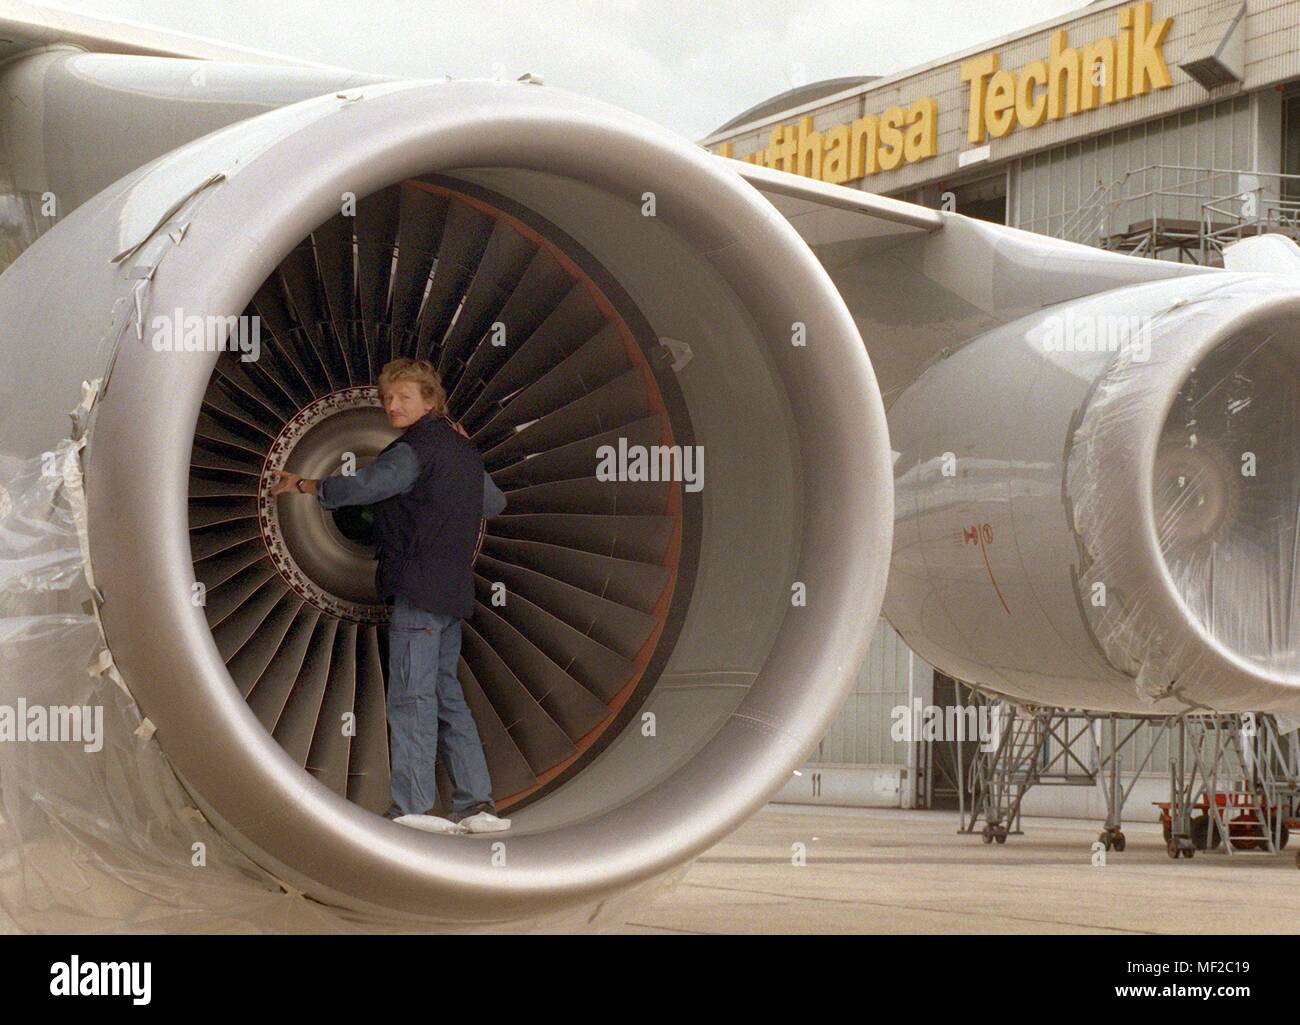 Ein Mechaniker steht am 14.9.1998 im riesigen Turbine eines Jumbo-jets vor  der Lufthansa Werft am Flughafen Berlin-Schönefeld. Die Deutsche Lufthansa  hat eine Testanlage für Motoren in Berlin-schönefeld und 50 Arbeitsplätze  geschaffen. Nach